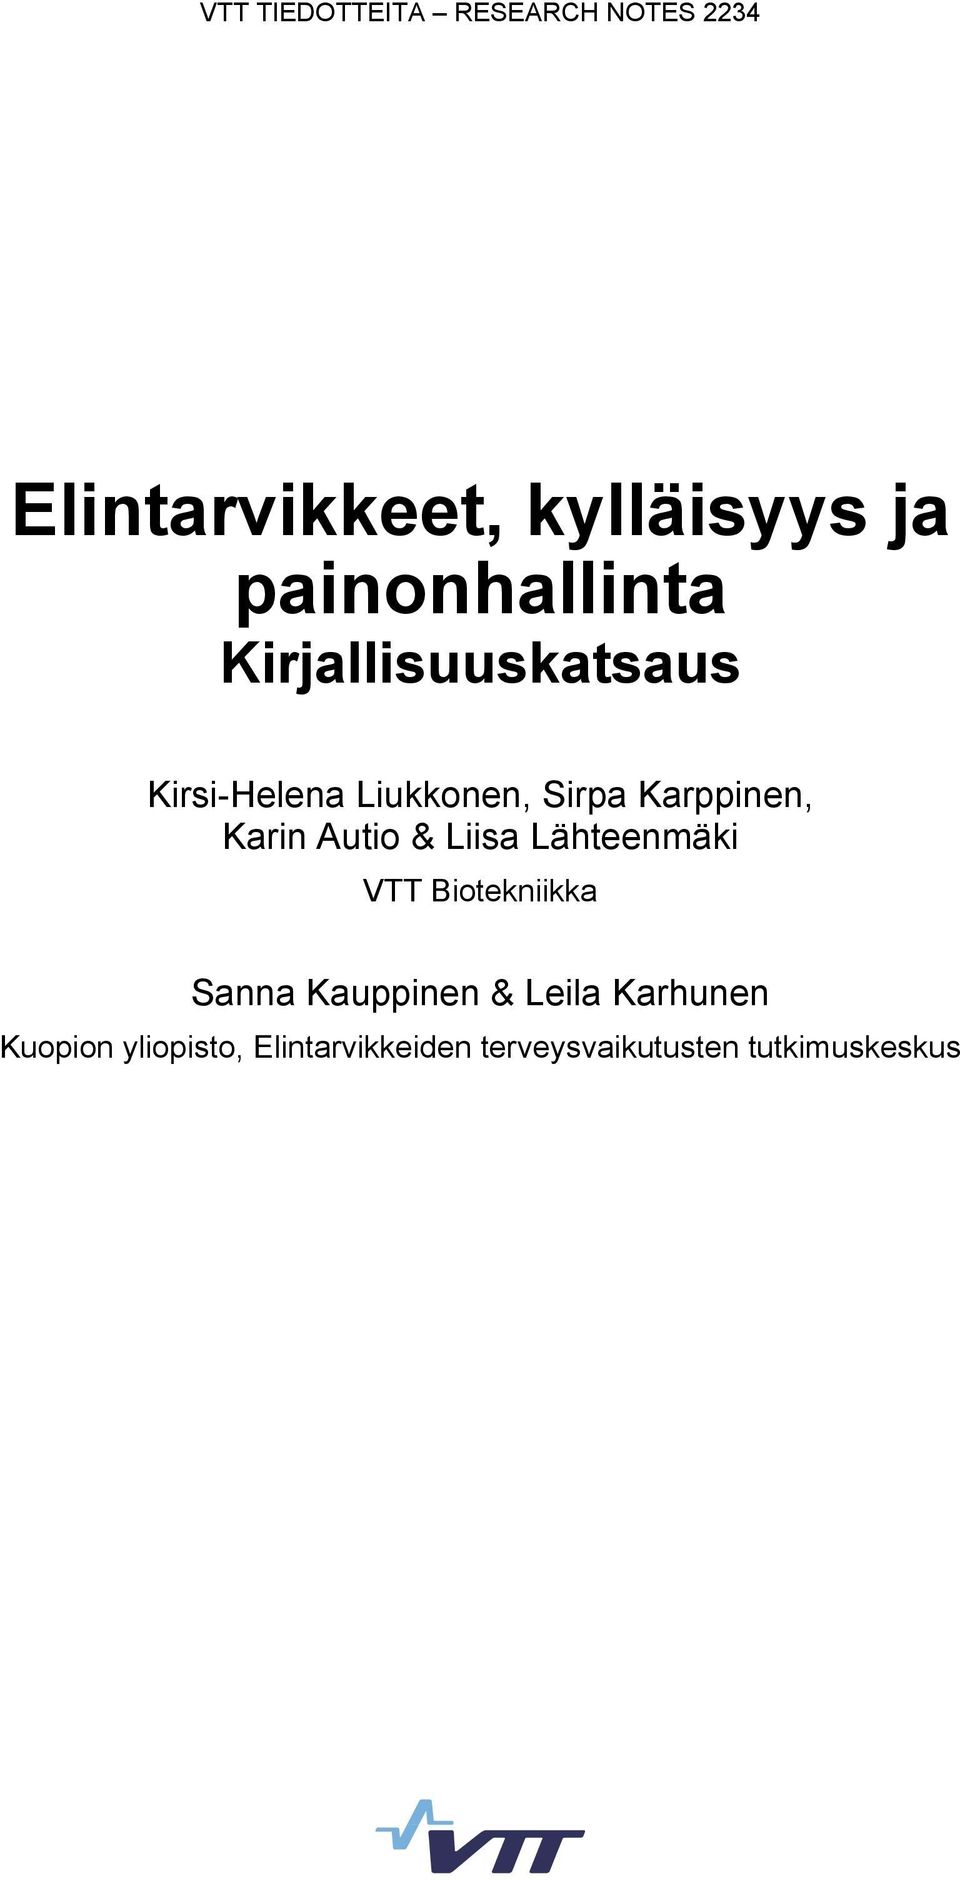 Karppinen, Karin Autio & Liisa Lähteenmäki VTT Biotekniikka Sanna